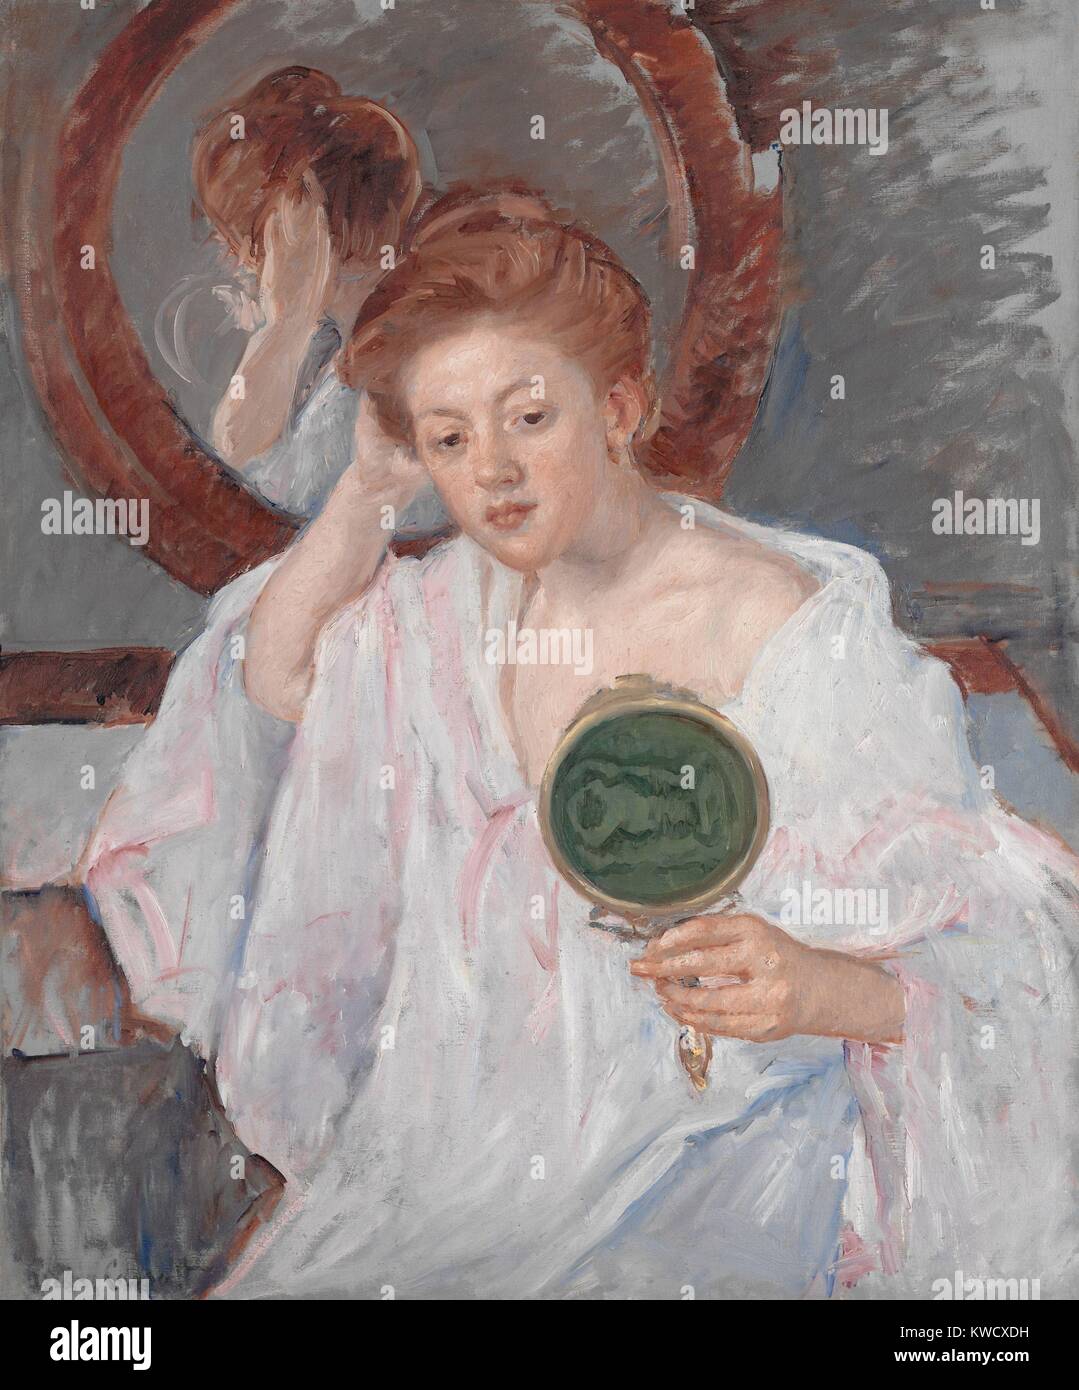 Denise à sa coiffeuse, par Mary Cassatt, 1908-9, la peinture impressionniste français, huile sur toile. Une jeune femme aux cheveux auburn étudie sa coiffure avec deux miroirs dans une composition picturale de brun chaud, roses et gris riche (BSLOC 2017 3 146) Banque D'Images